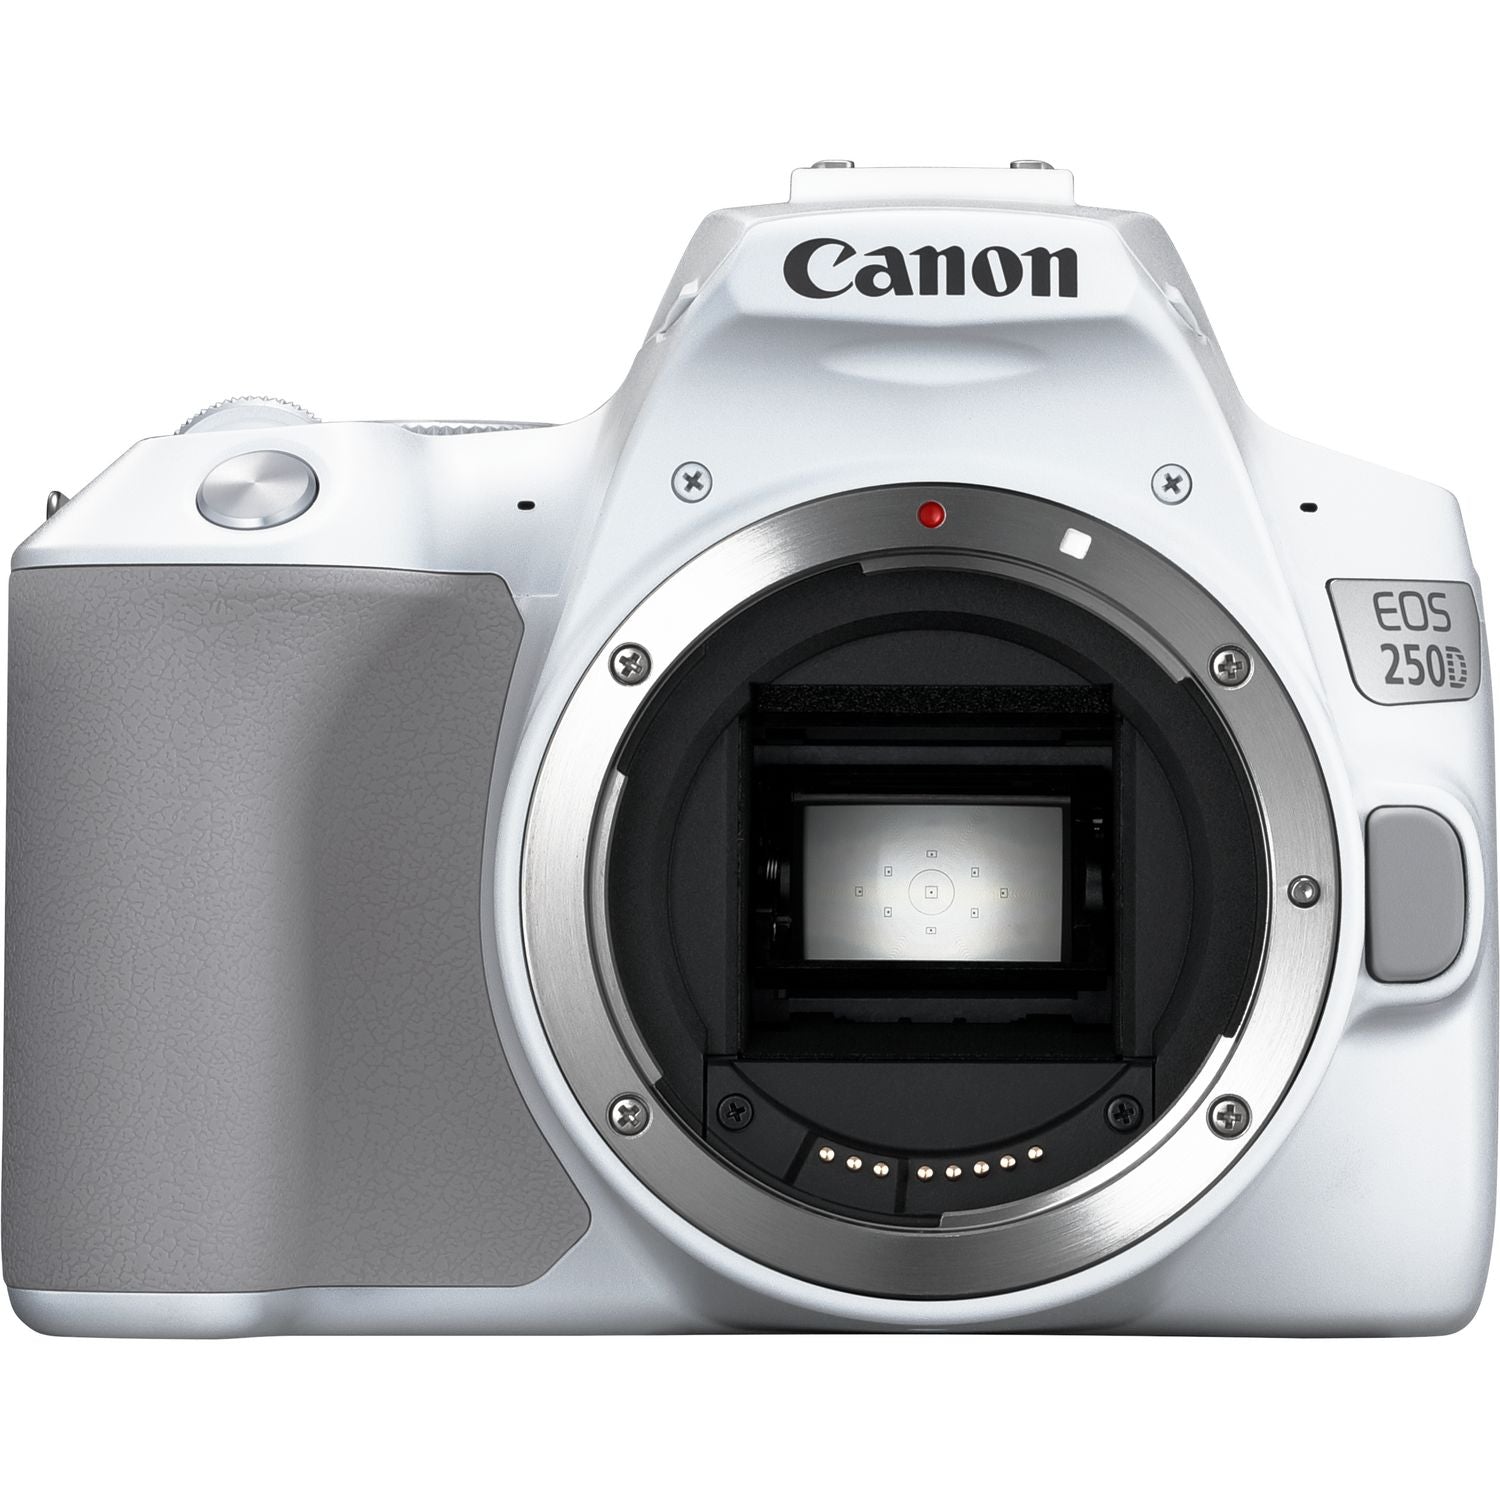 Canon EOS 250D / Rebel SL3 DSLR Camera (Body Only) + Canon Lens + More Bundle